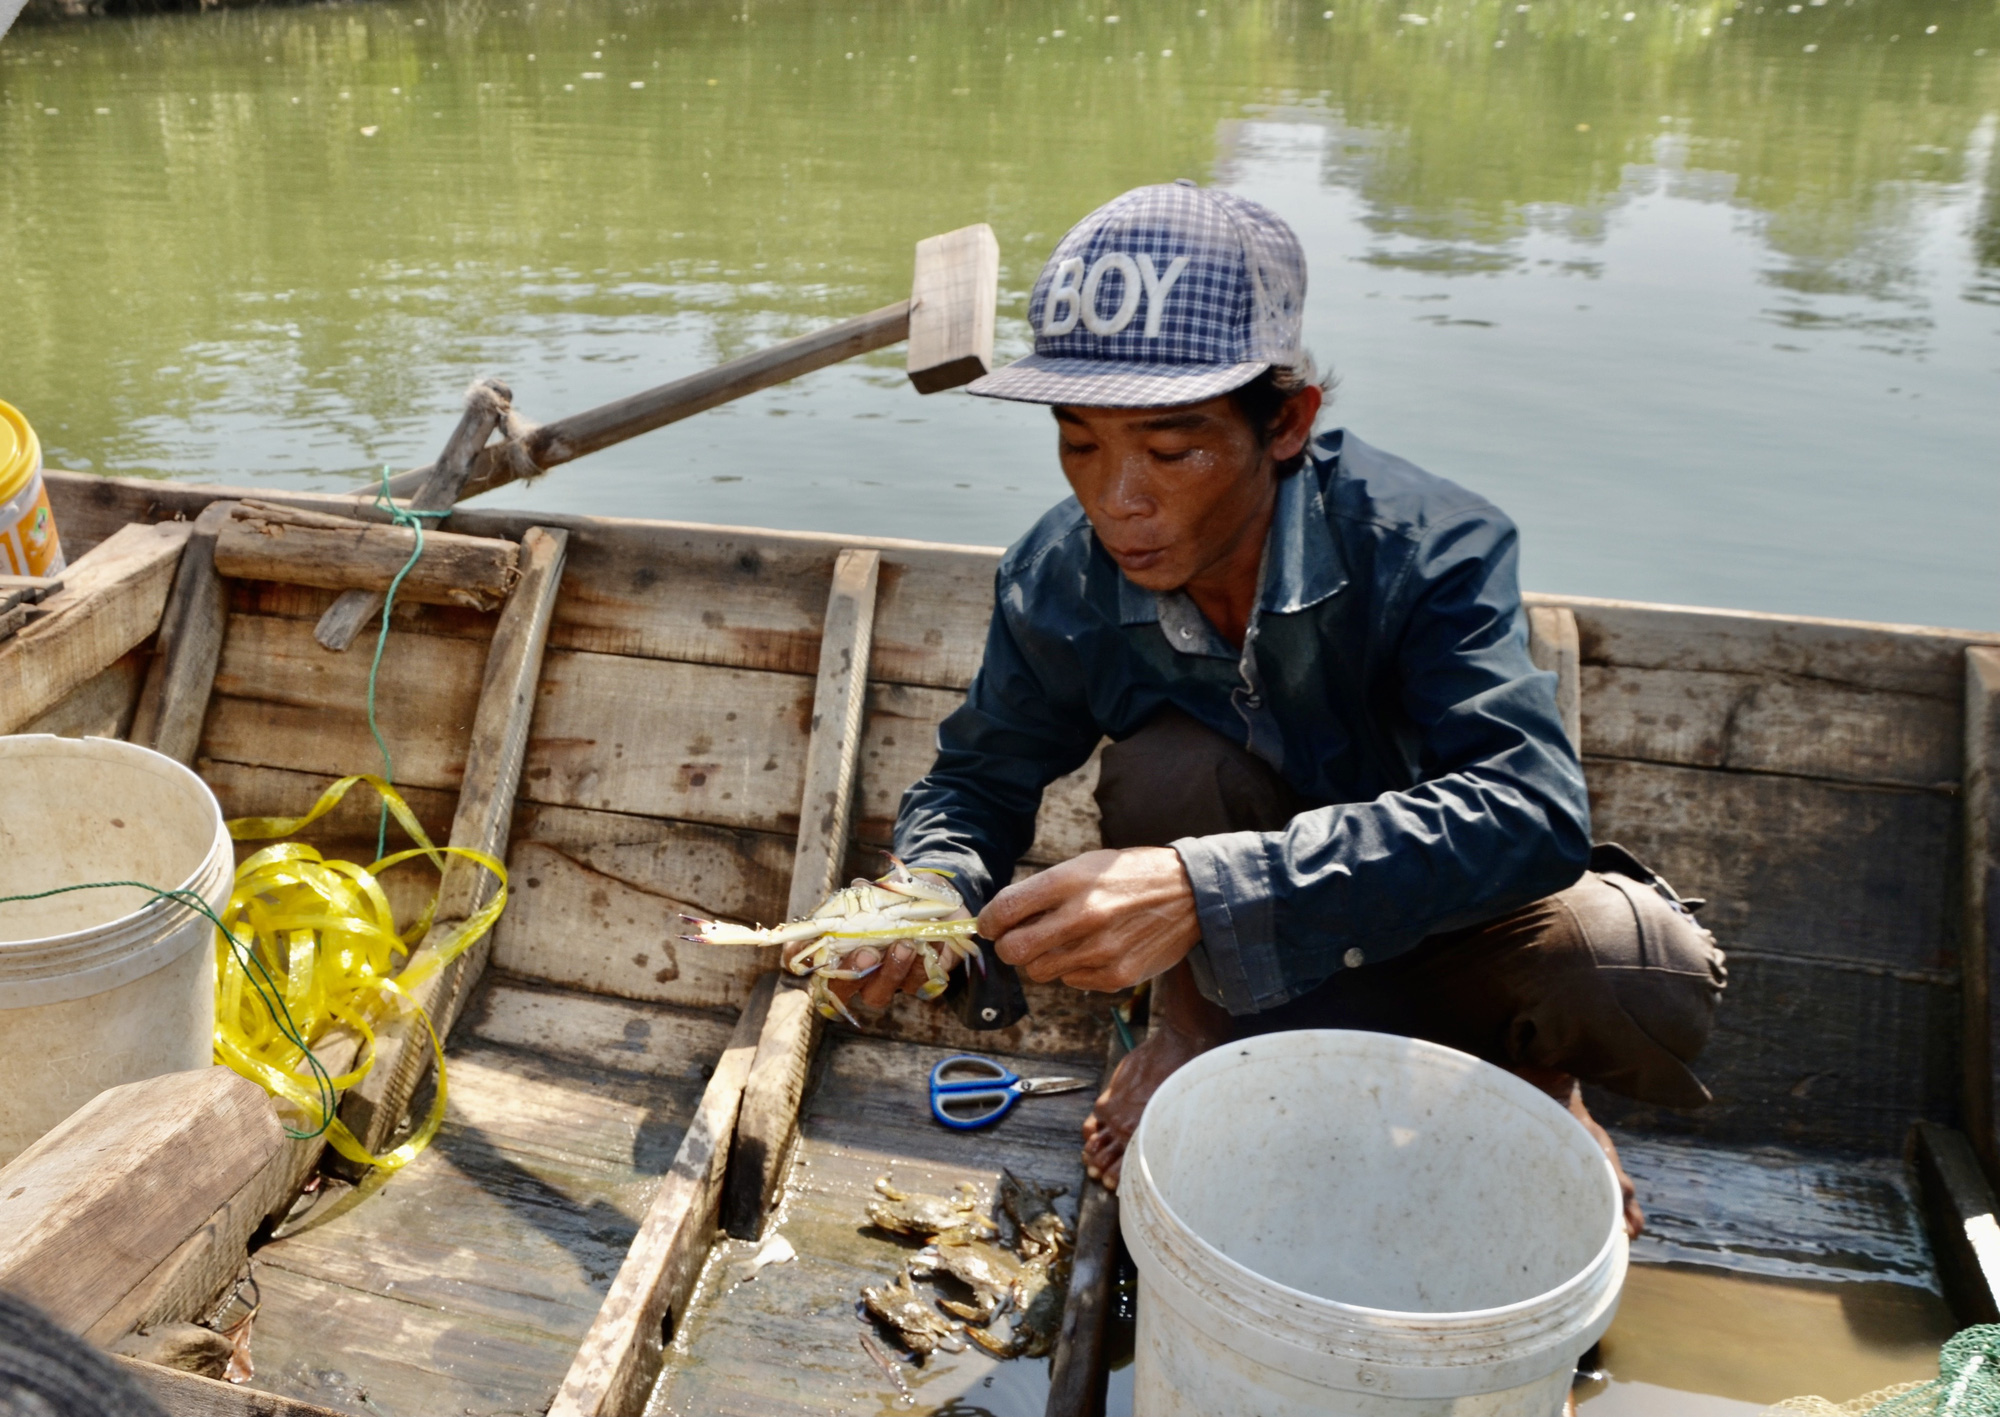 Bà Rịa-Vũng Tàu: Đáng mừng, dân đã bắt được vô số cá tôm trên sông Thị Vải, kiếm 500.000 đồng mỗi ngày - Ảnh 2.